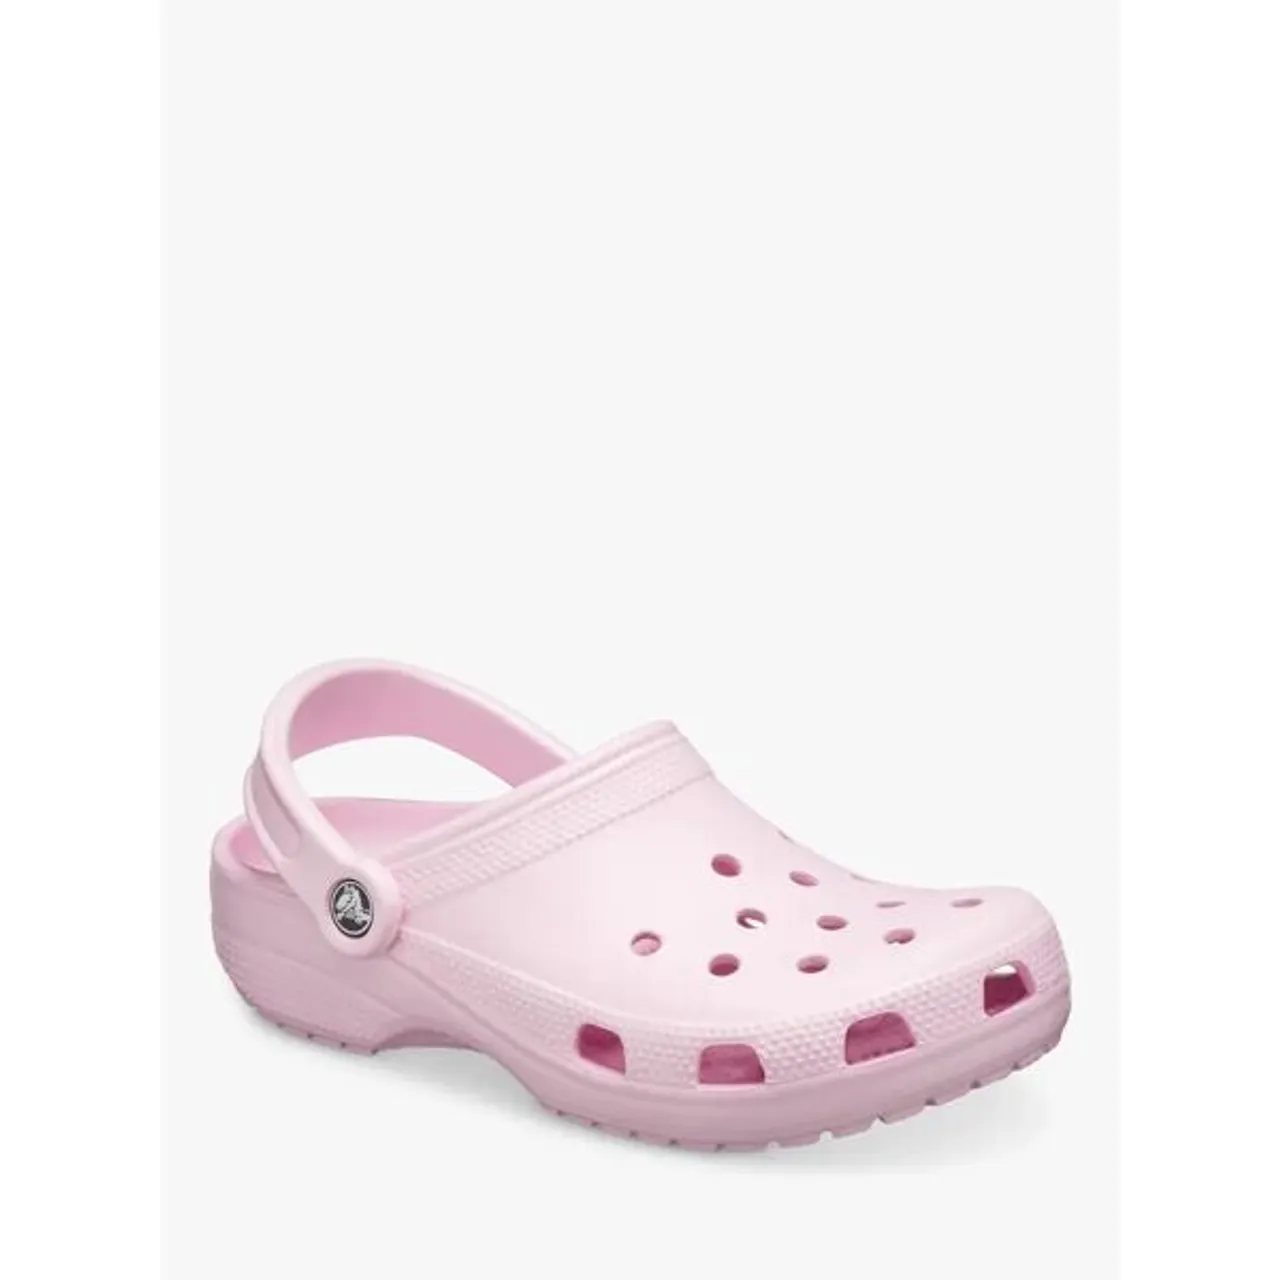 Crocs Classic Clogs - Light Pink - Female